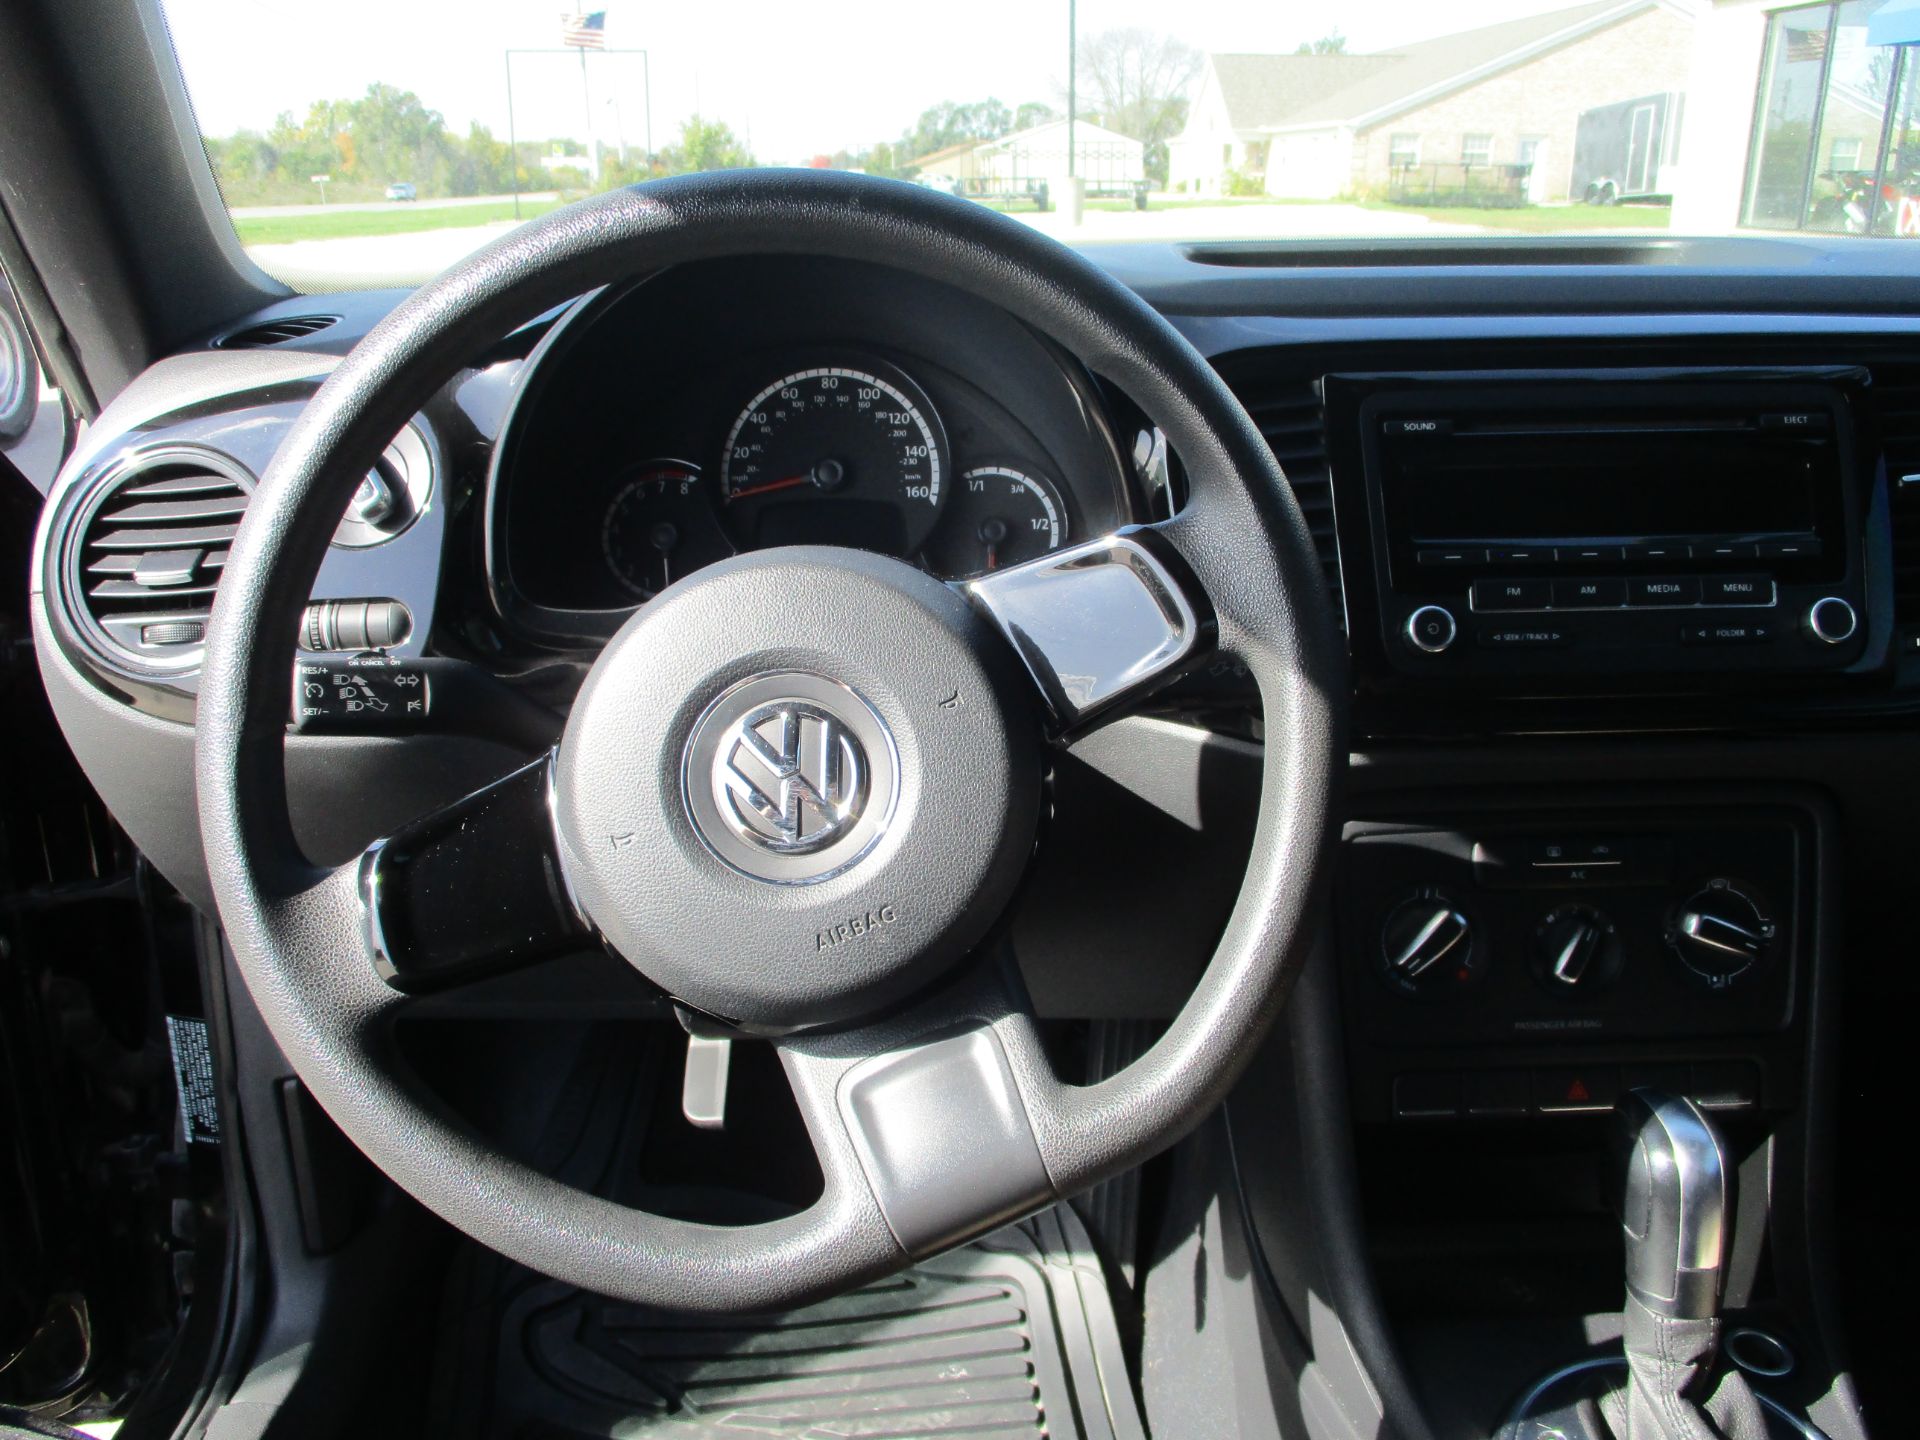 2014 Volkswagen BEETLE i5 in Winterset, Iowa - Photo 17